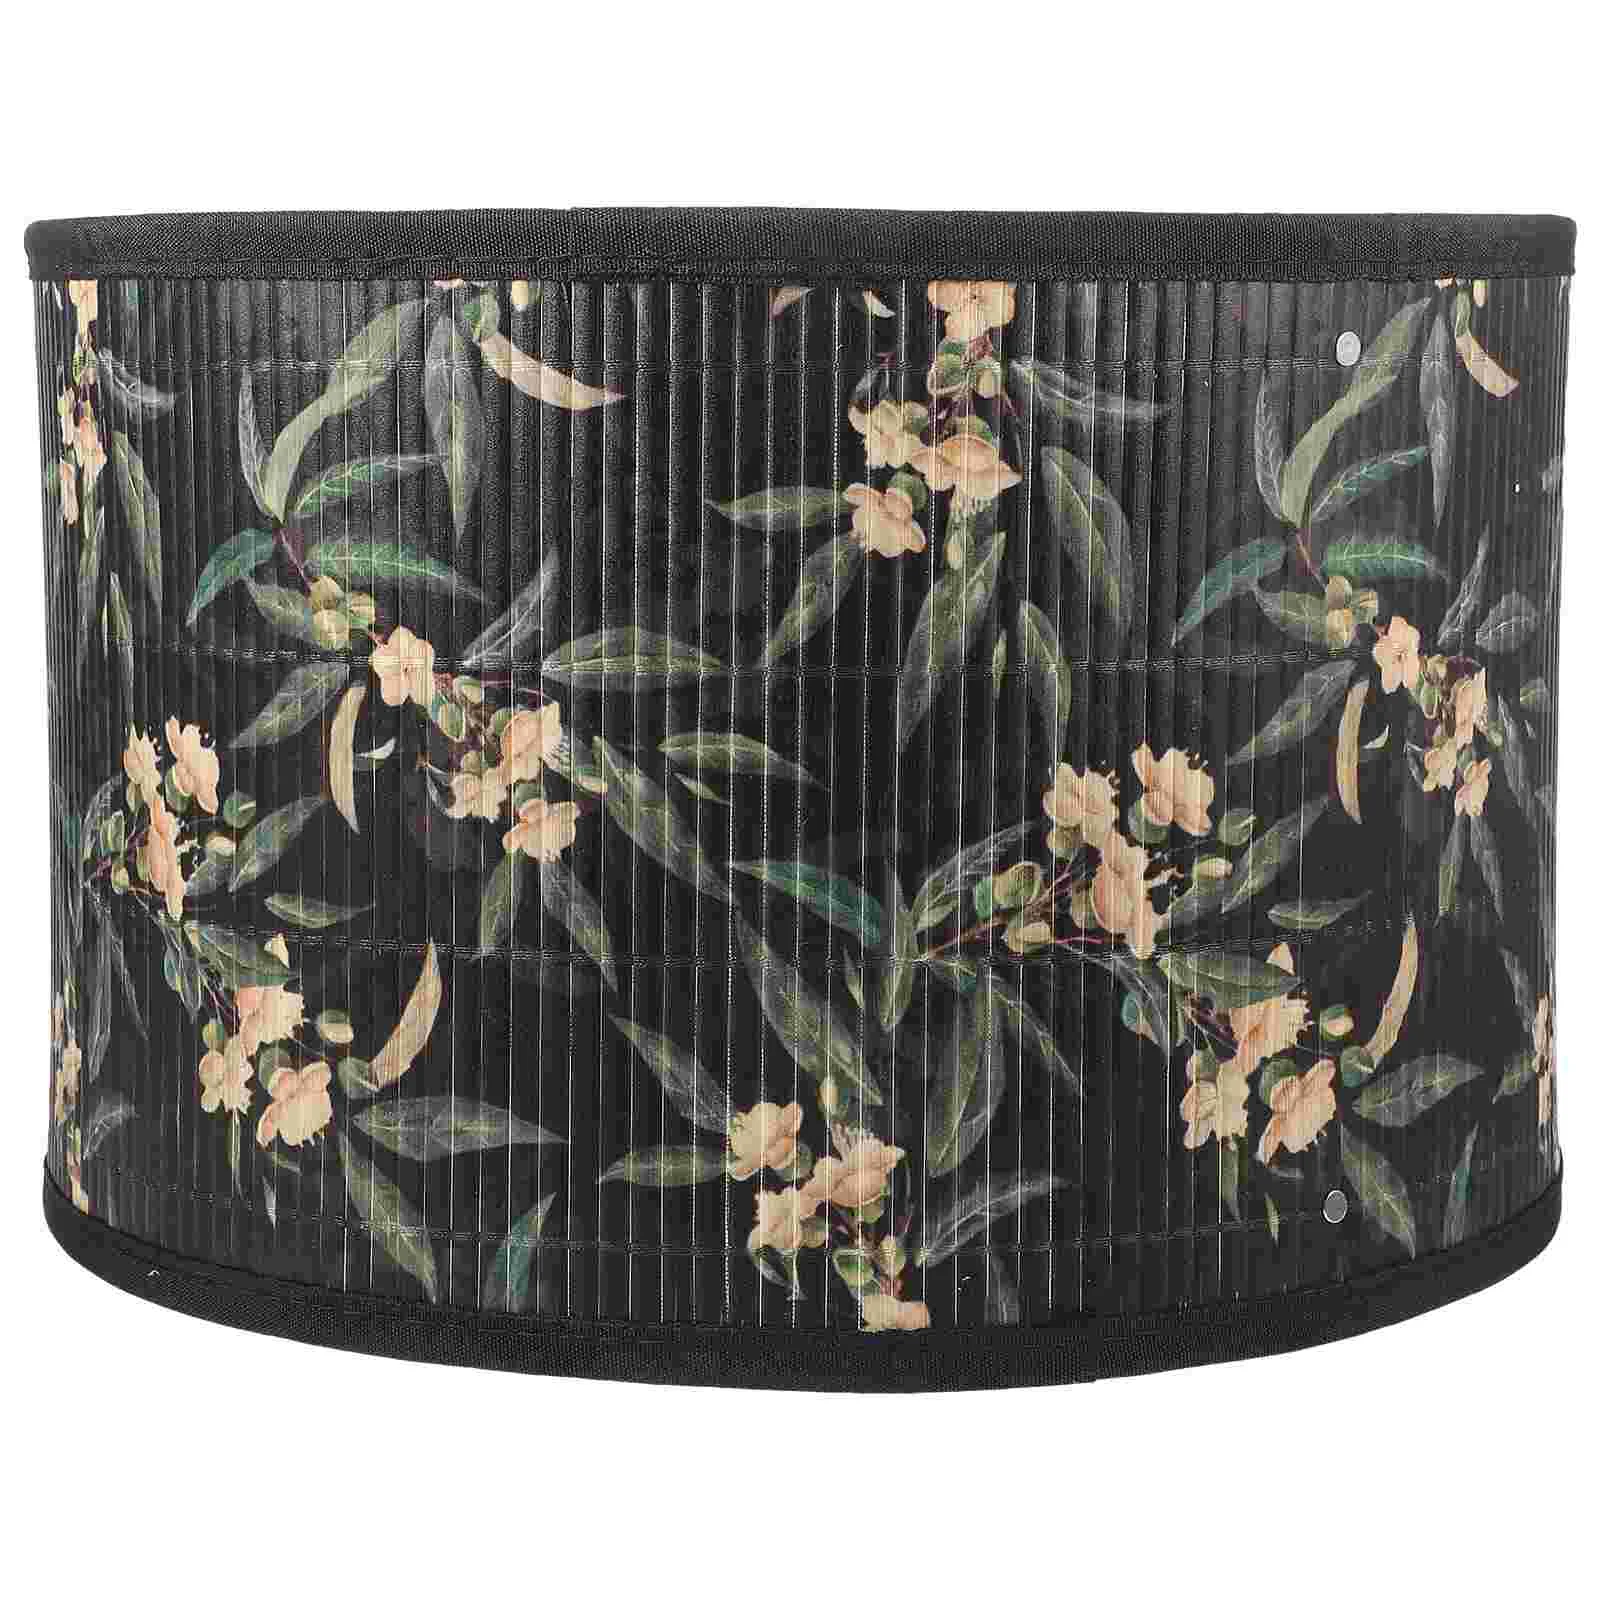 Бамбуковый абажур с цветочным принтом, крышка лампы с винтажной растительной печатью, сменный абажур для лампы - 1